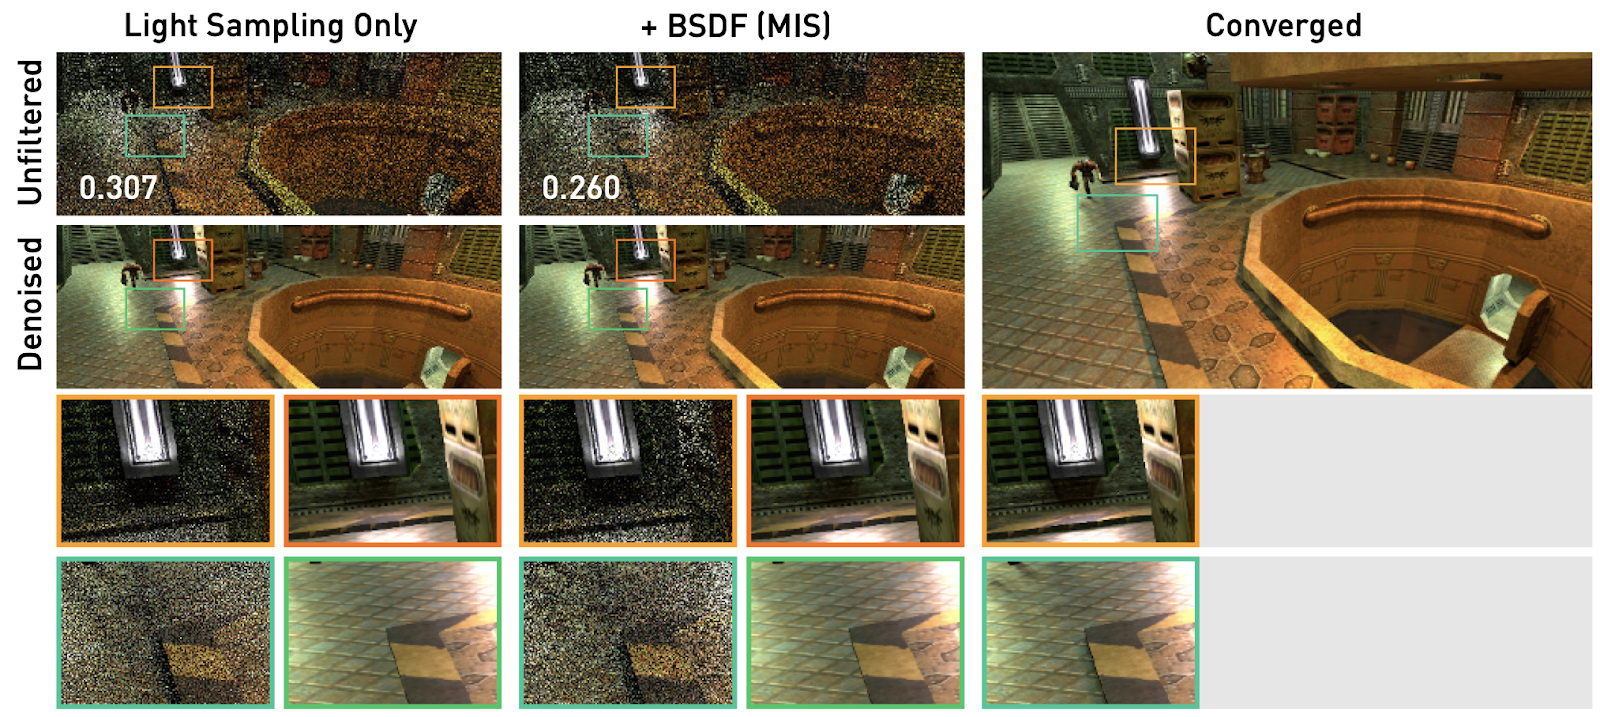 Результаты с MIS-взвешенными выборками BSDF и без них, по одной выборке на пиксель, без фильтрации (вверху) и без шумоподавления (внизу) [2]